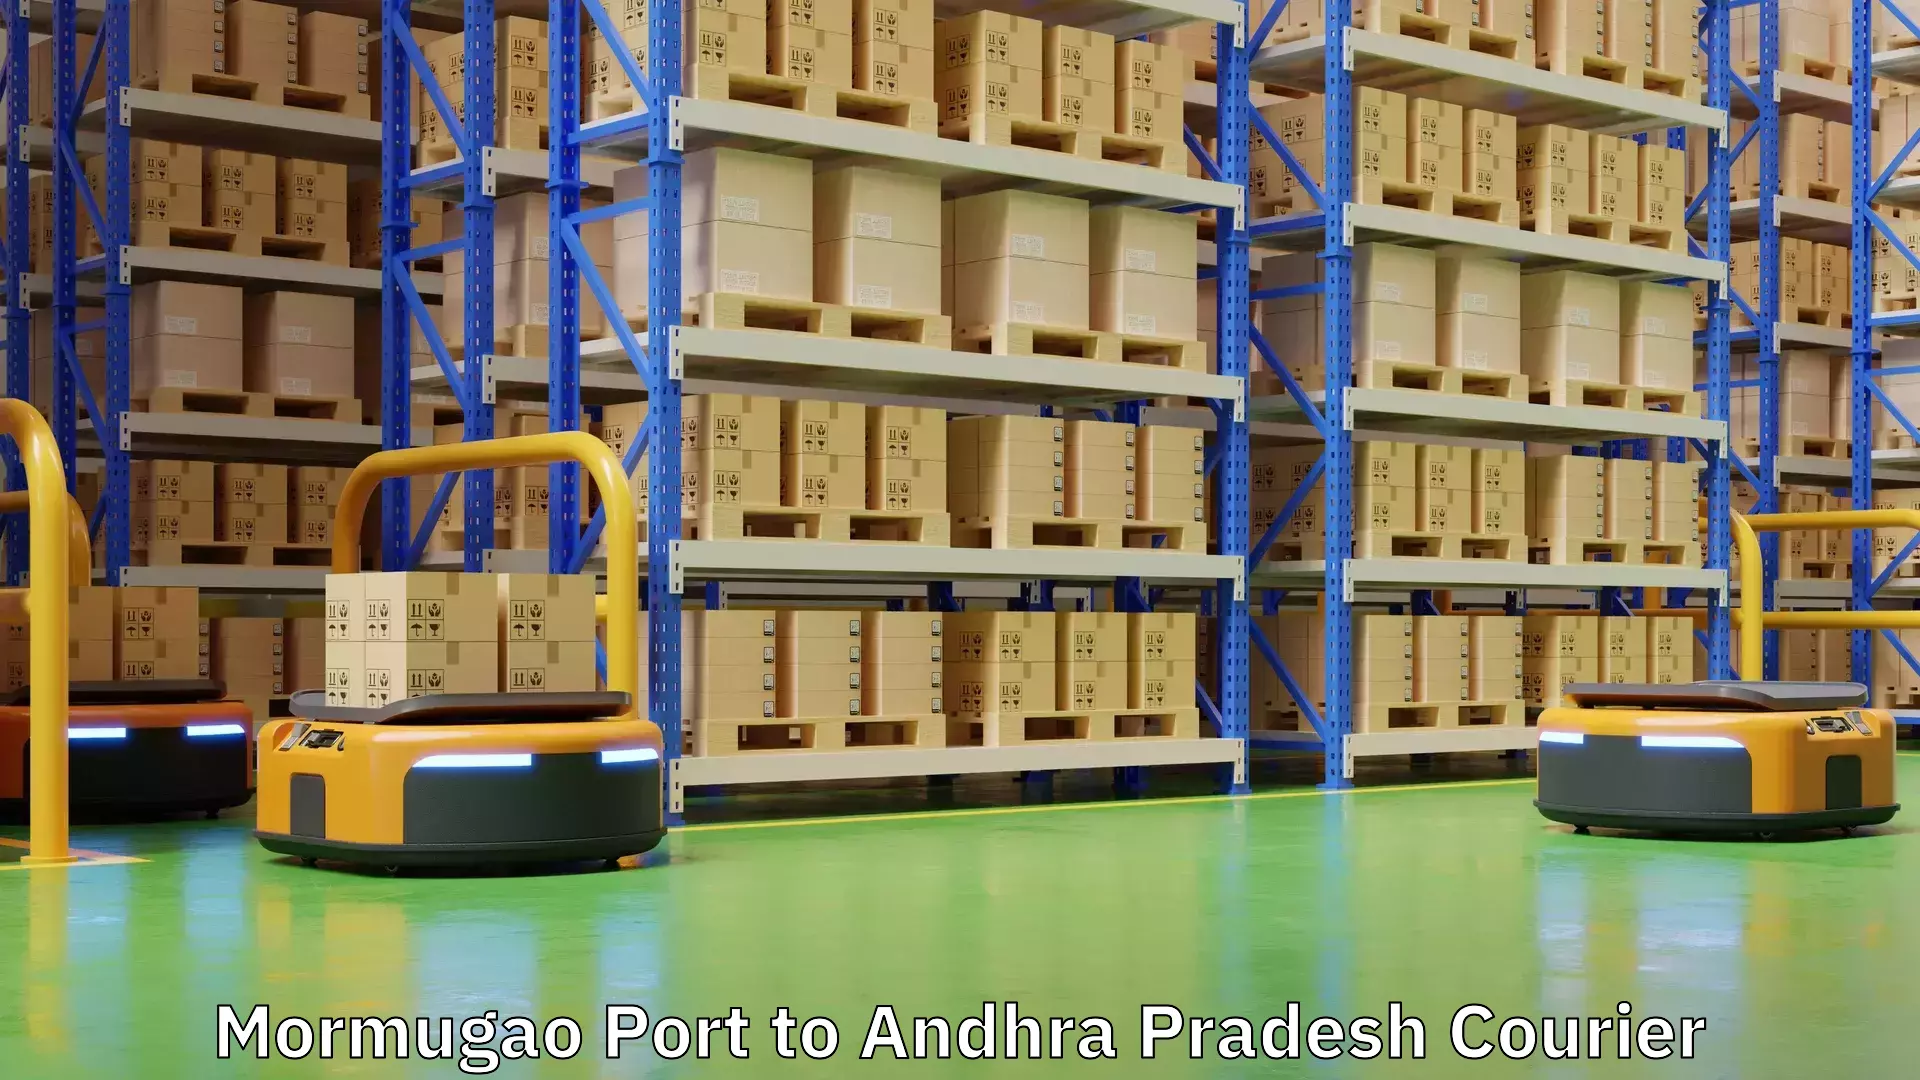 Reliable logistics providers Mormugao Port to Andhra Pradesh